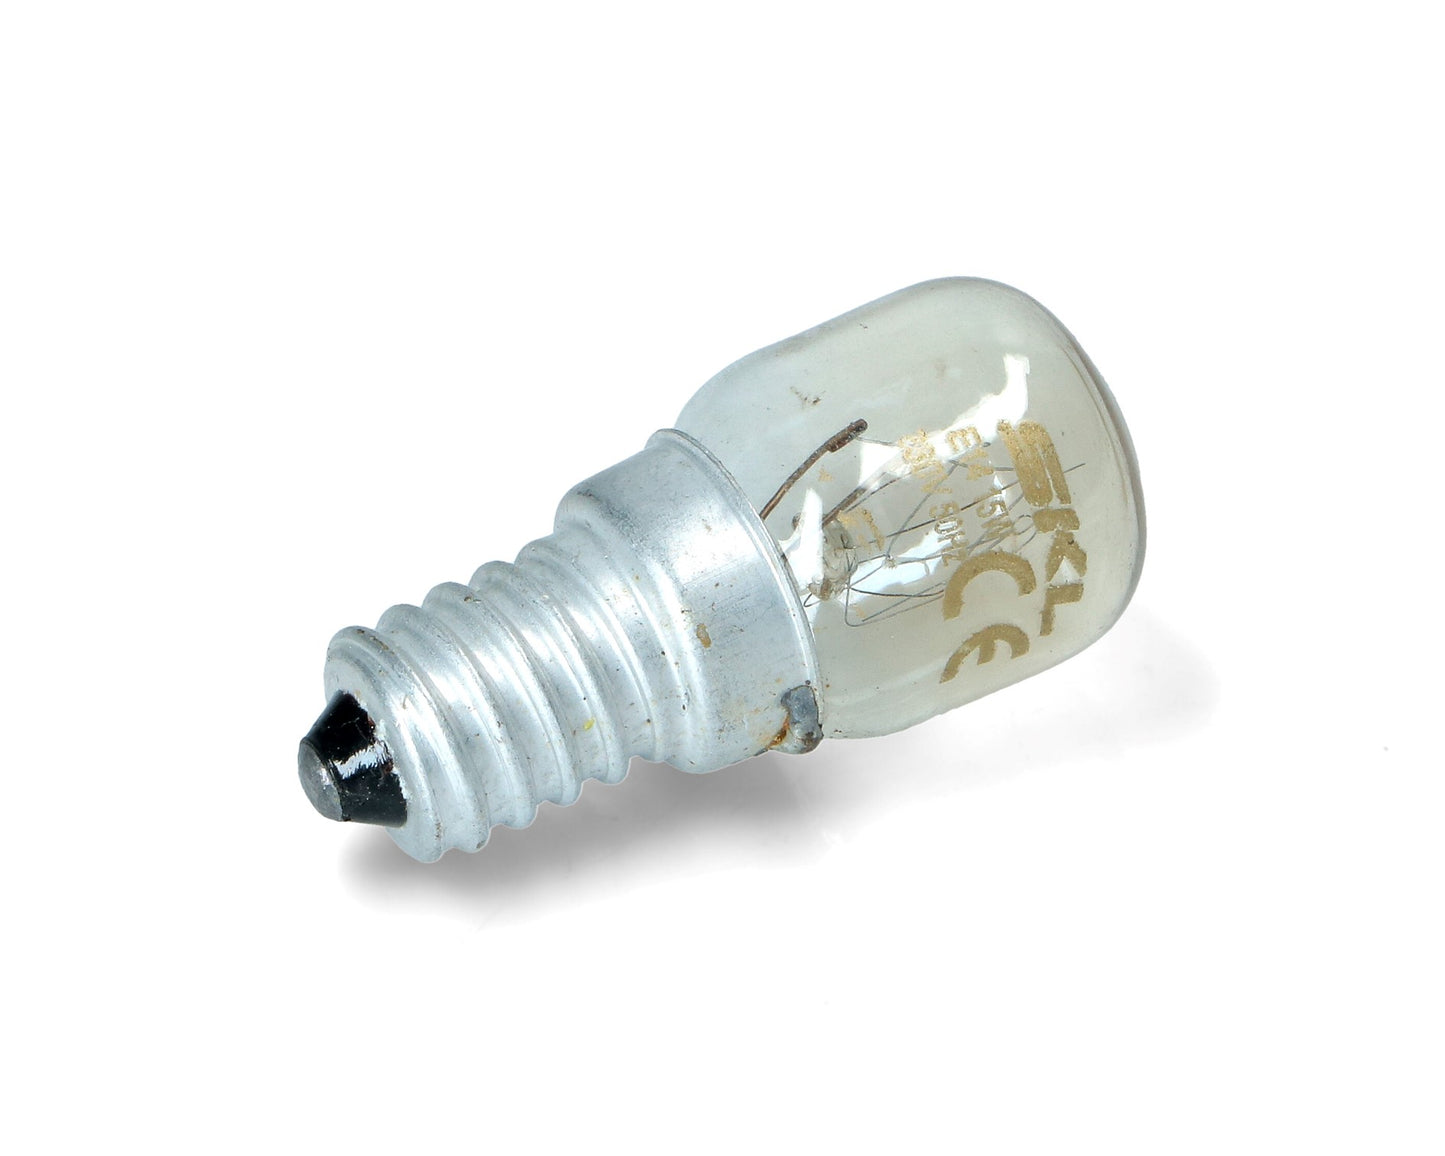 Oven Lamp Light Bulb E14 SES Pygmy for for Samsung cooker 15W 300° Degrees